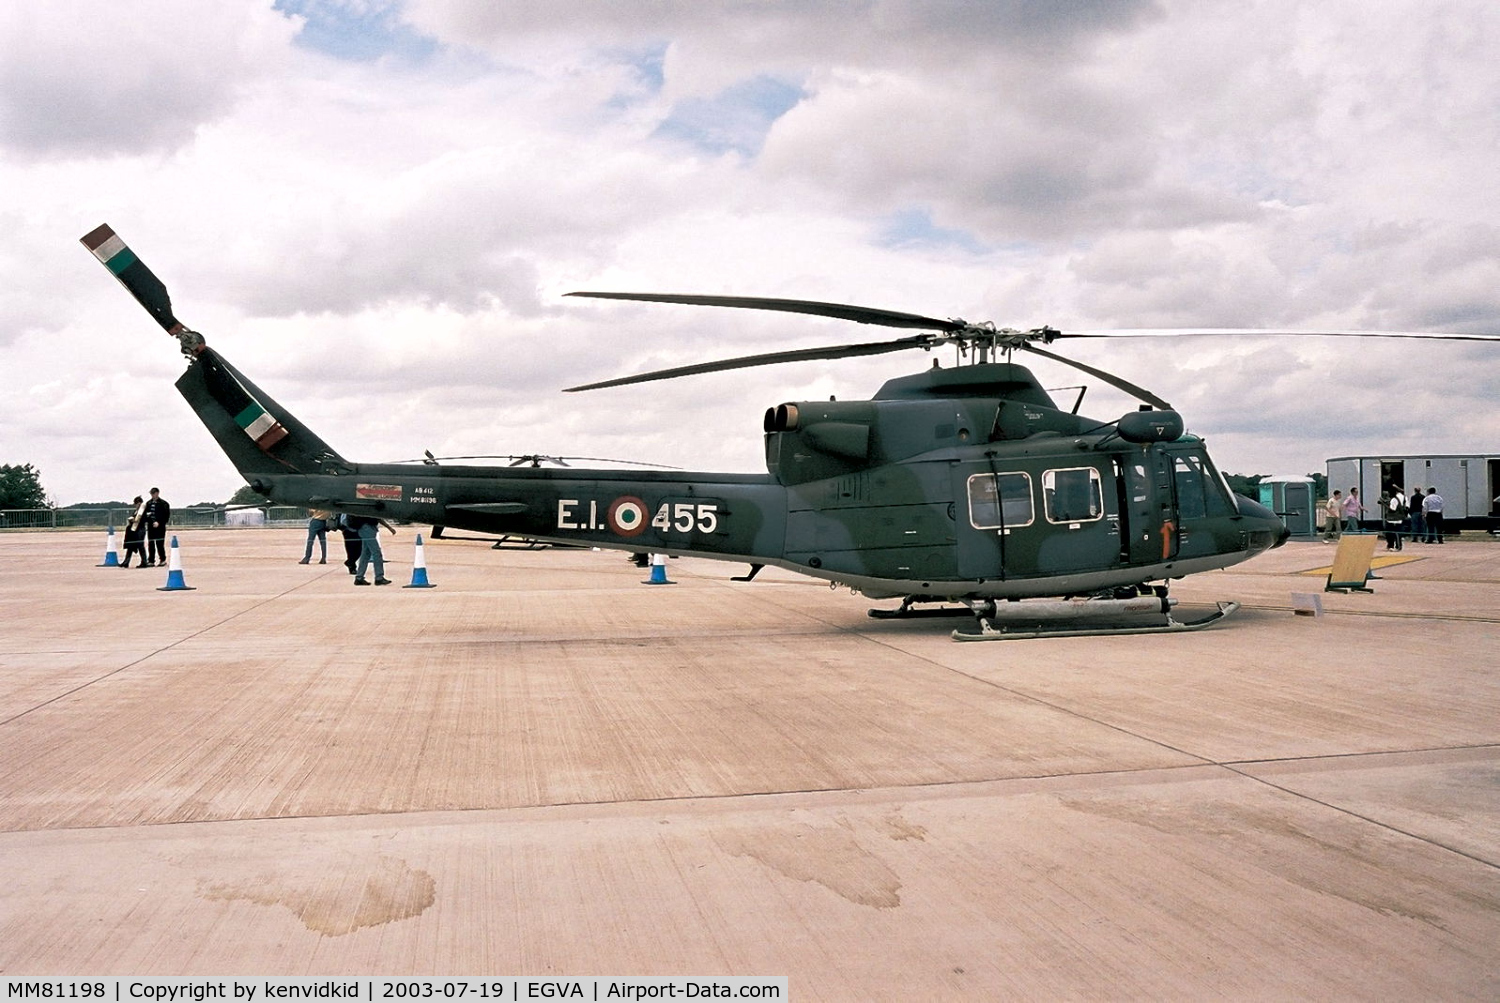 MM81198, 1986 Agusta AB-412 Grifone C/N 25537, Italian Air Force at RIAT.